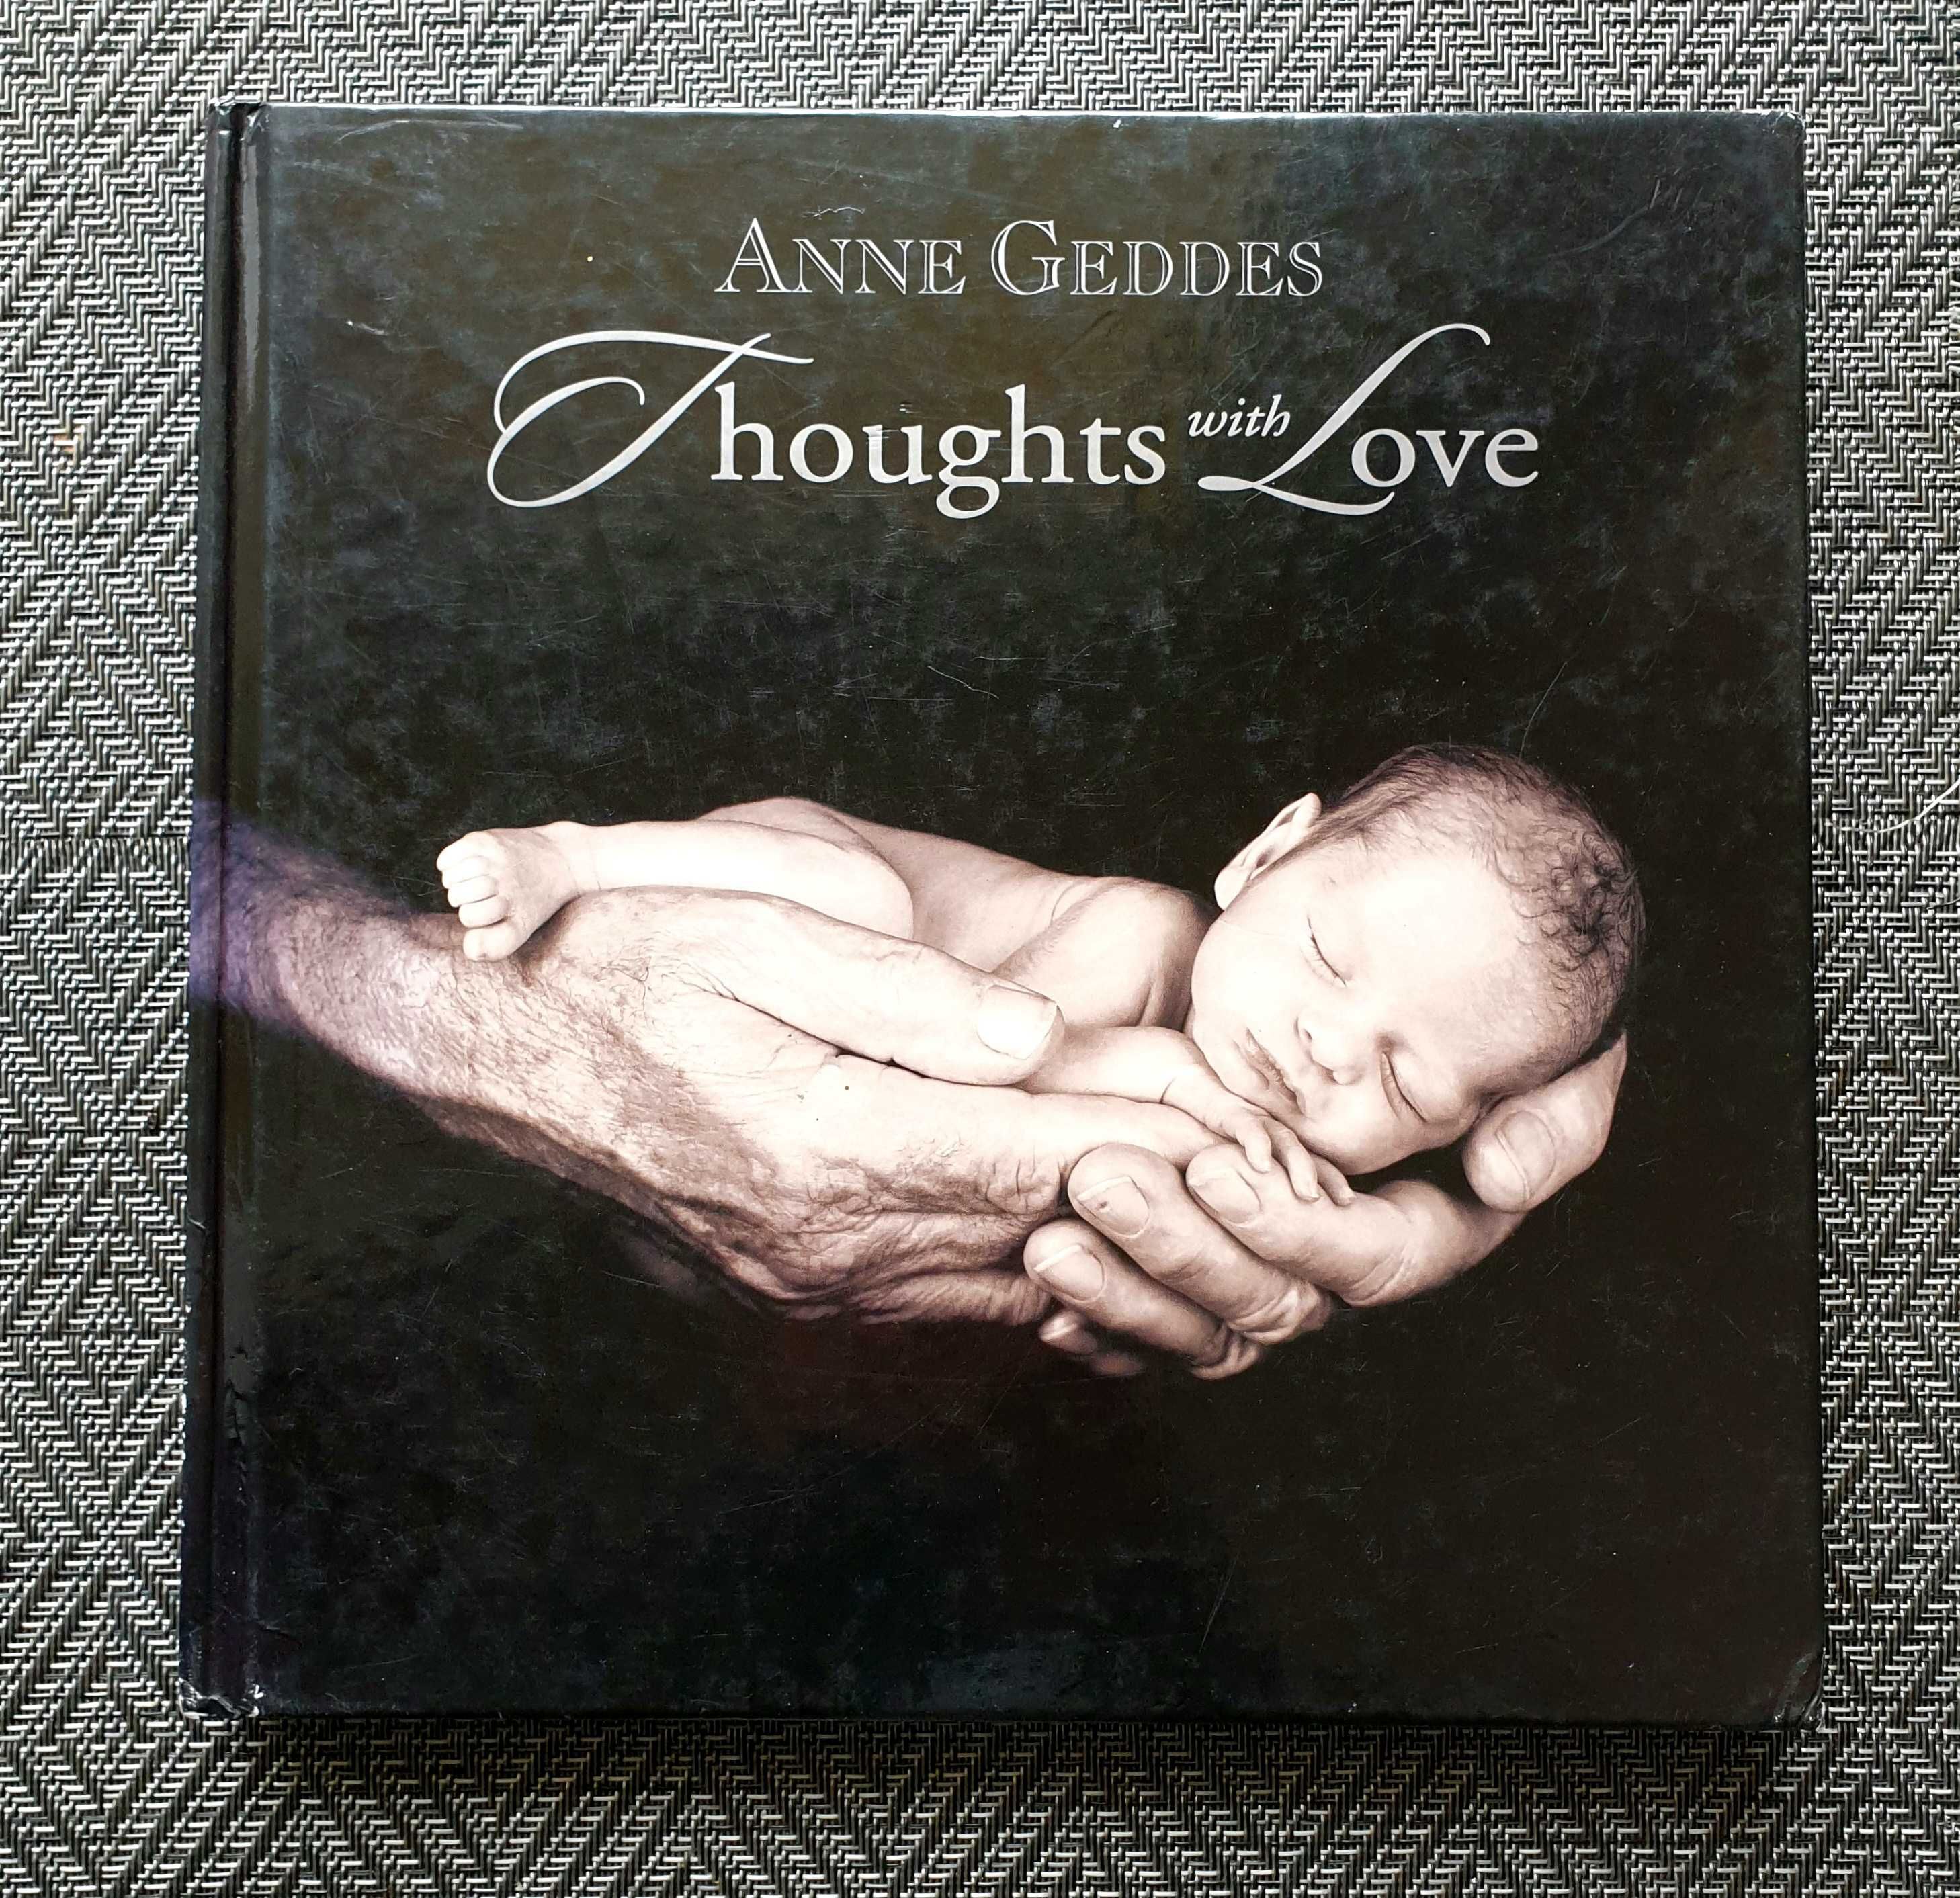 Album Anne Geddes Thoughts Love ilustracje zdjęcia fotografie dzieci